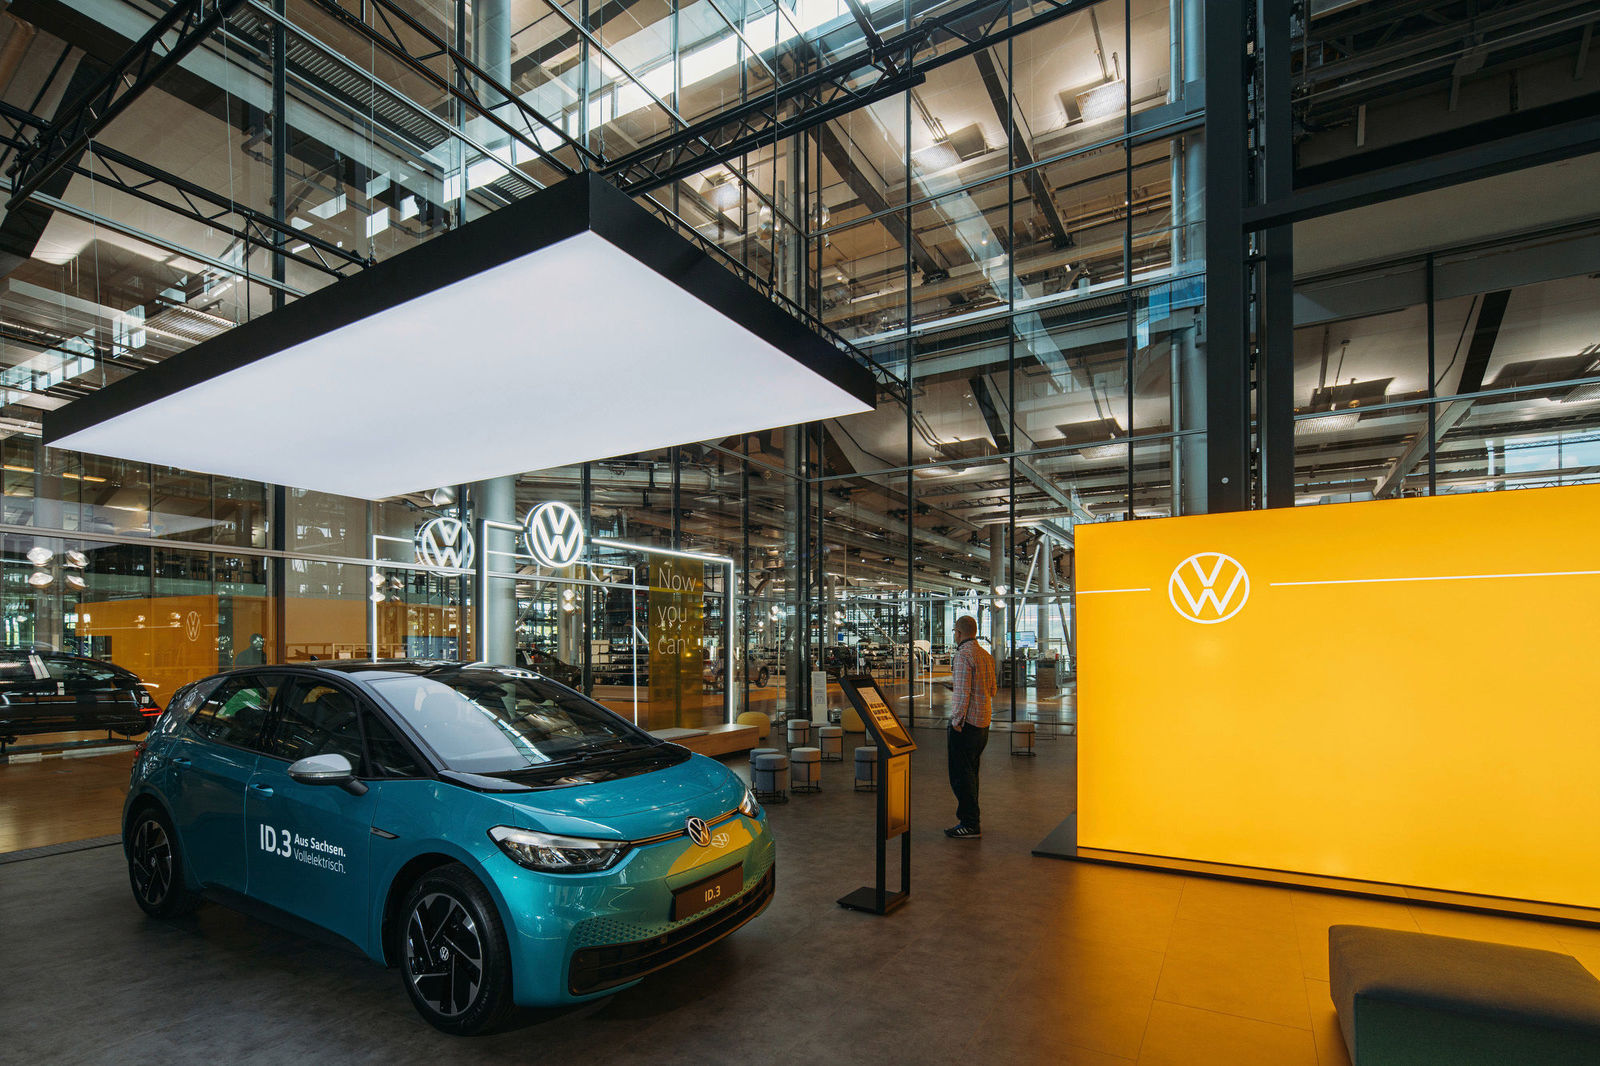 Rund um die Elektromobilität: In der Gläsernen Manufaktur in Dresden wurde jetzt der erste hochmoderne ID. Store eröffnet.